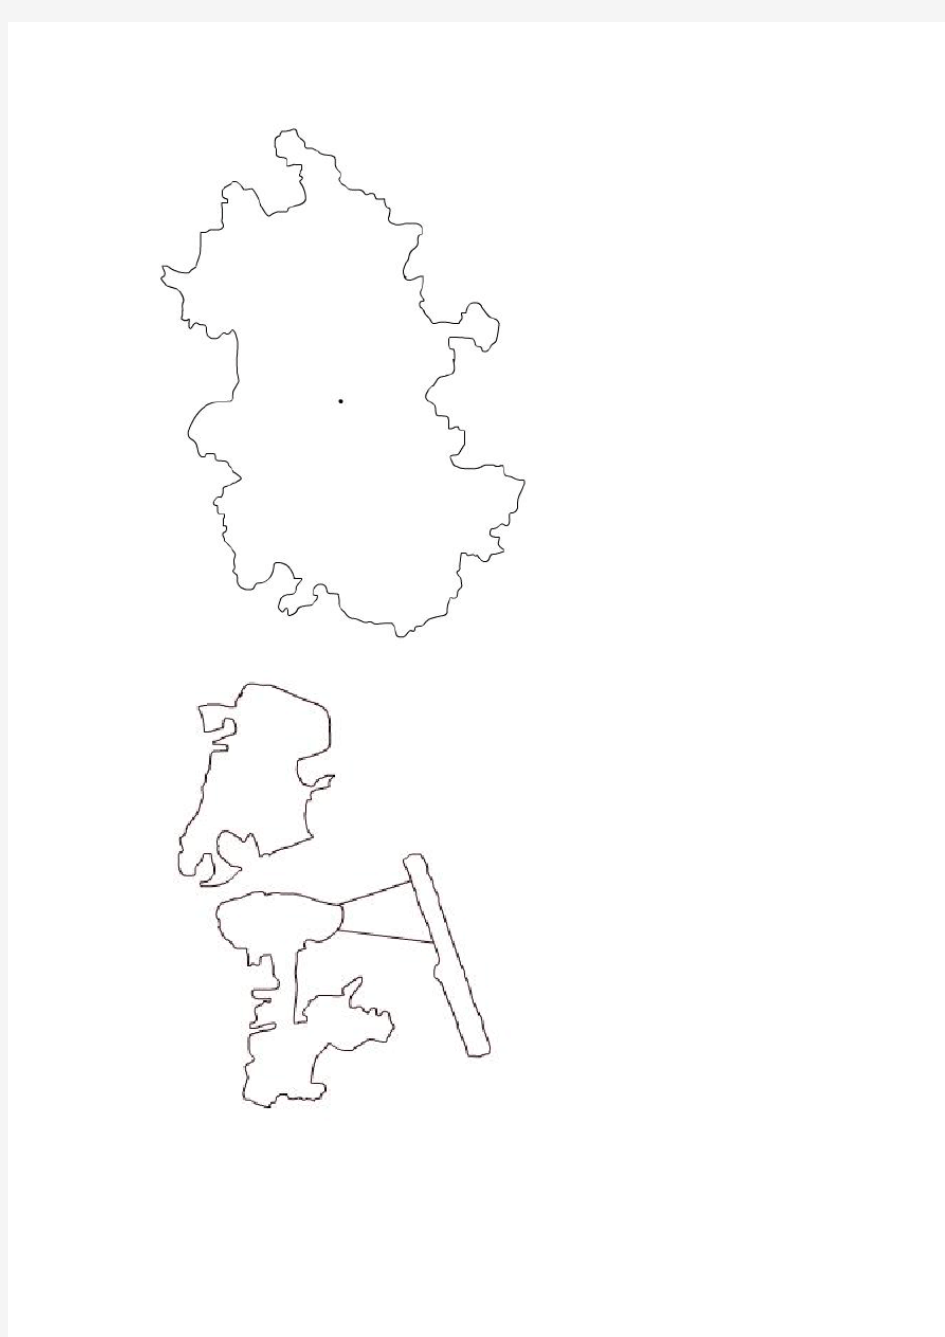 中国各省地图简图(34个省级行政区)